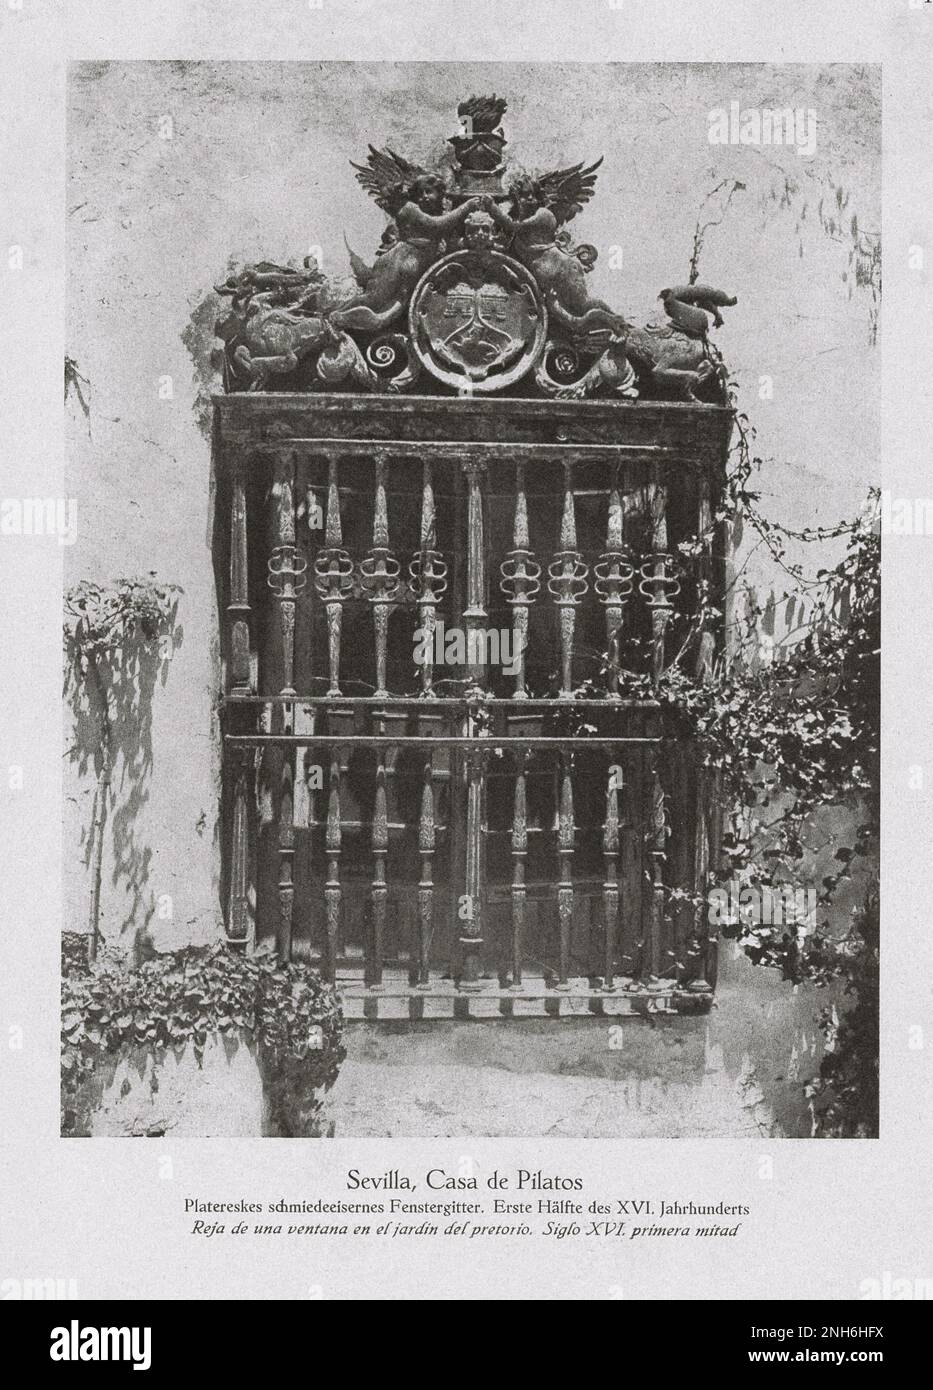 Architektur des alten Spaniens. Vintage-Foto der Casa de Pilatos (Pilatenhaus) in Sevilla. Ein andalusischer Palast in Sevilla, Spanien, der als Dauerresidenz der Herzöge von Medinaceli dient. Es ist ein Beispiel für ein italienisches Renaissance-Gebäude mit Mudéjar-Elementen und Dekorationen. Stockfoto